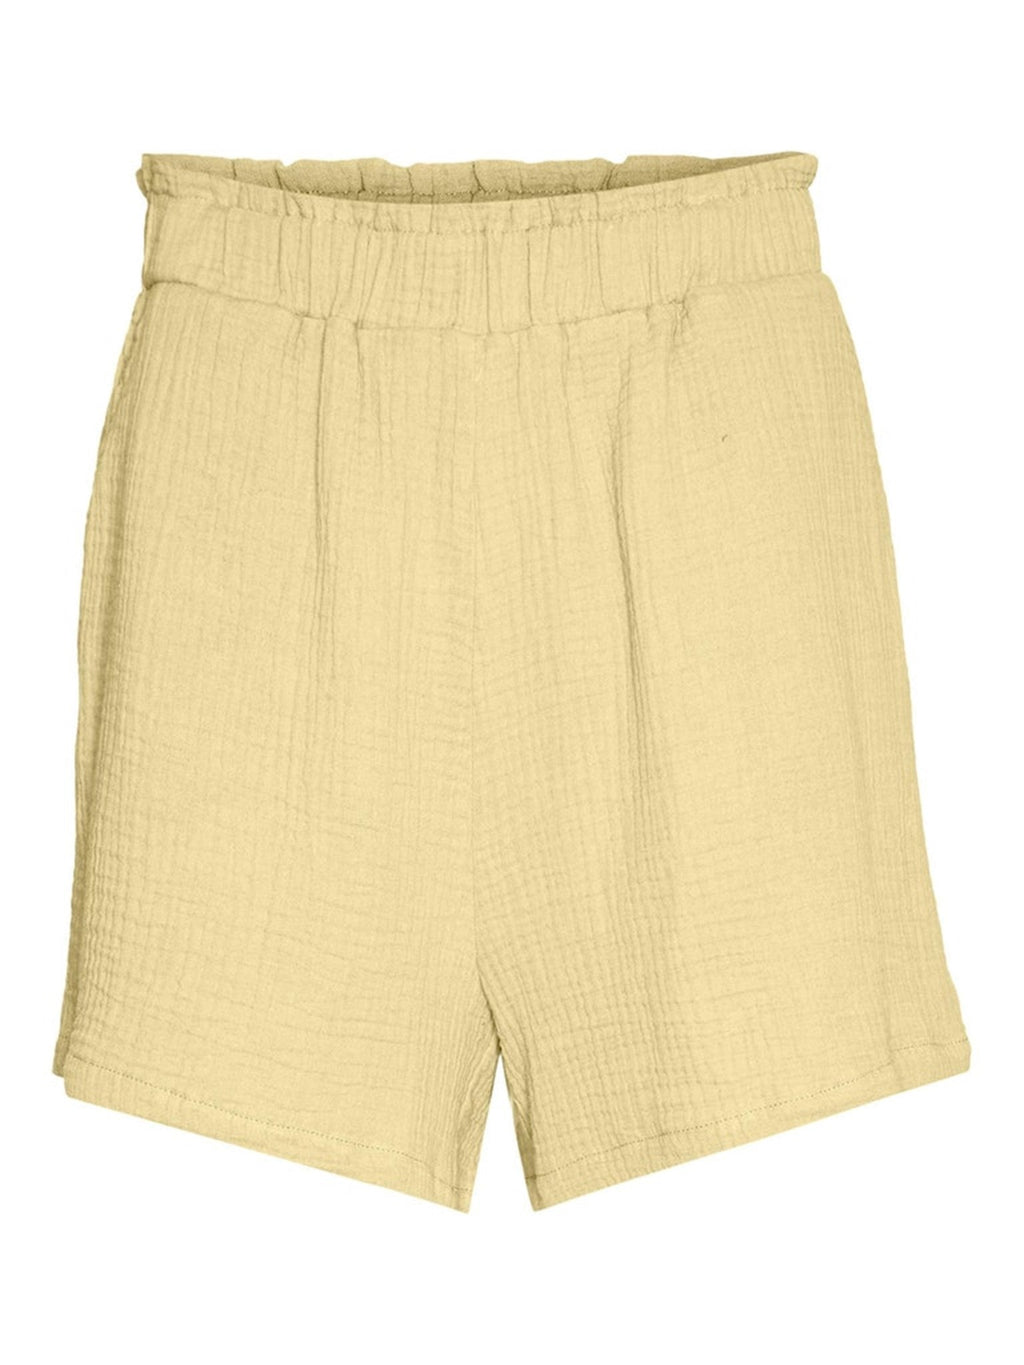 Pantalones cortos de Natali - merengue de limón